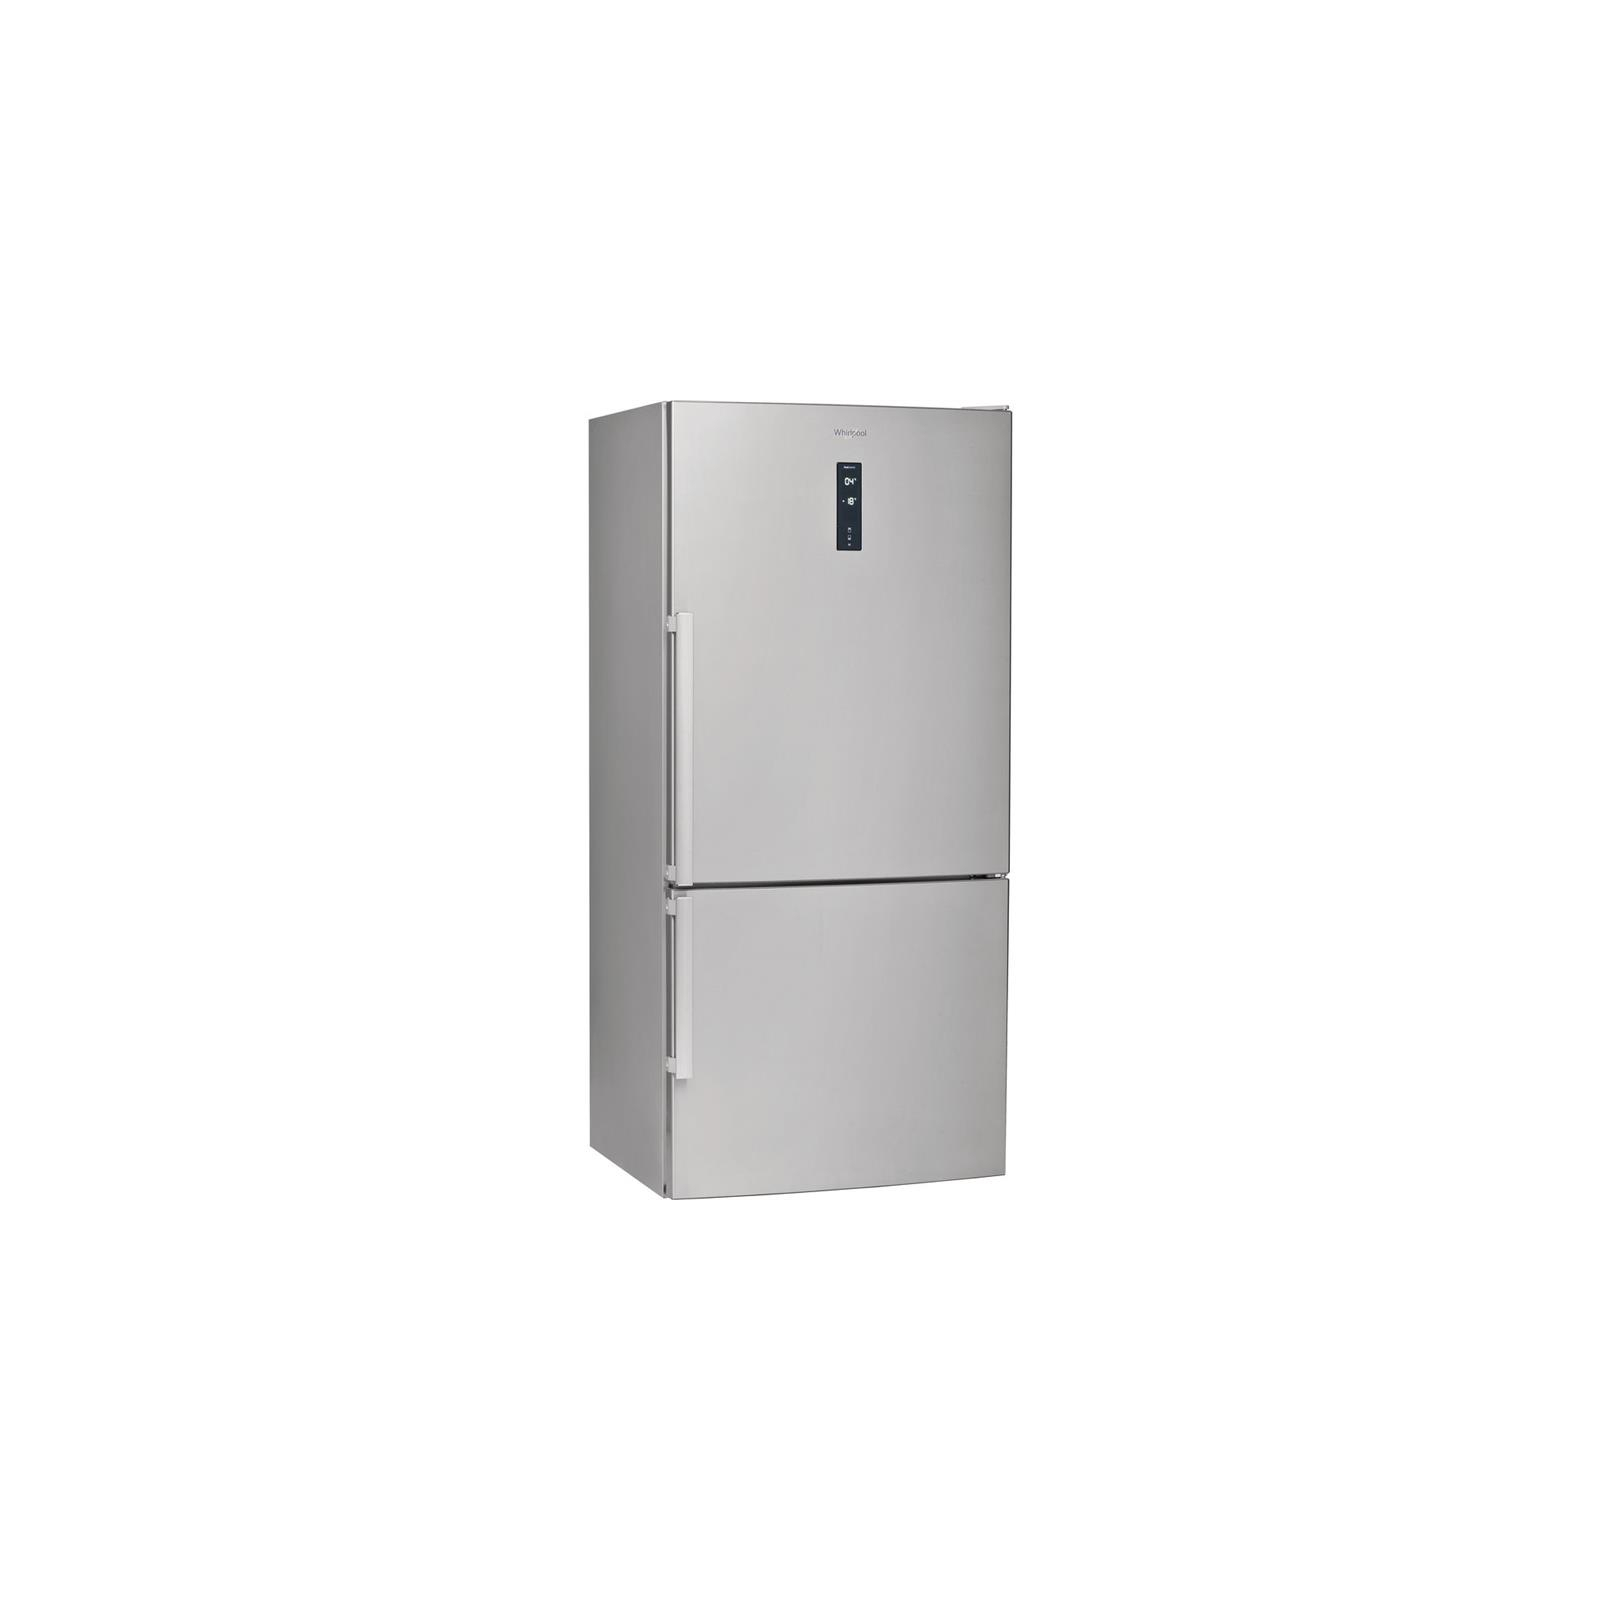 Холодильник Whirlpool W84BE72X